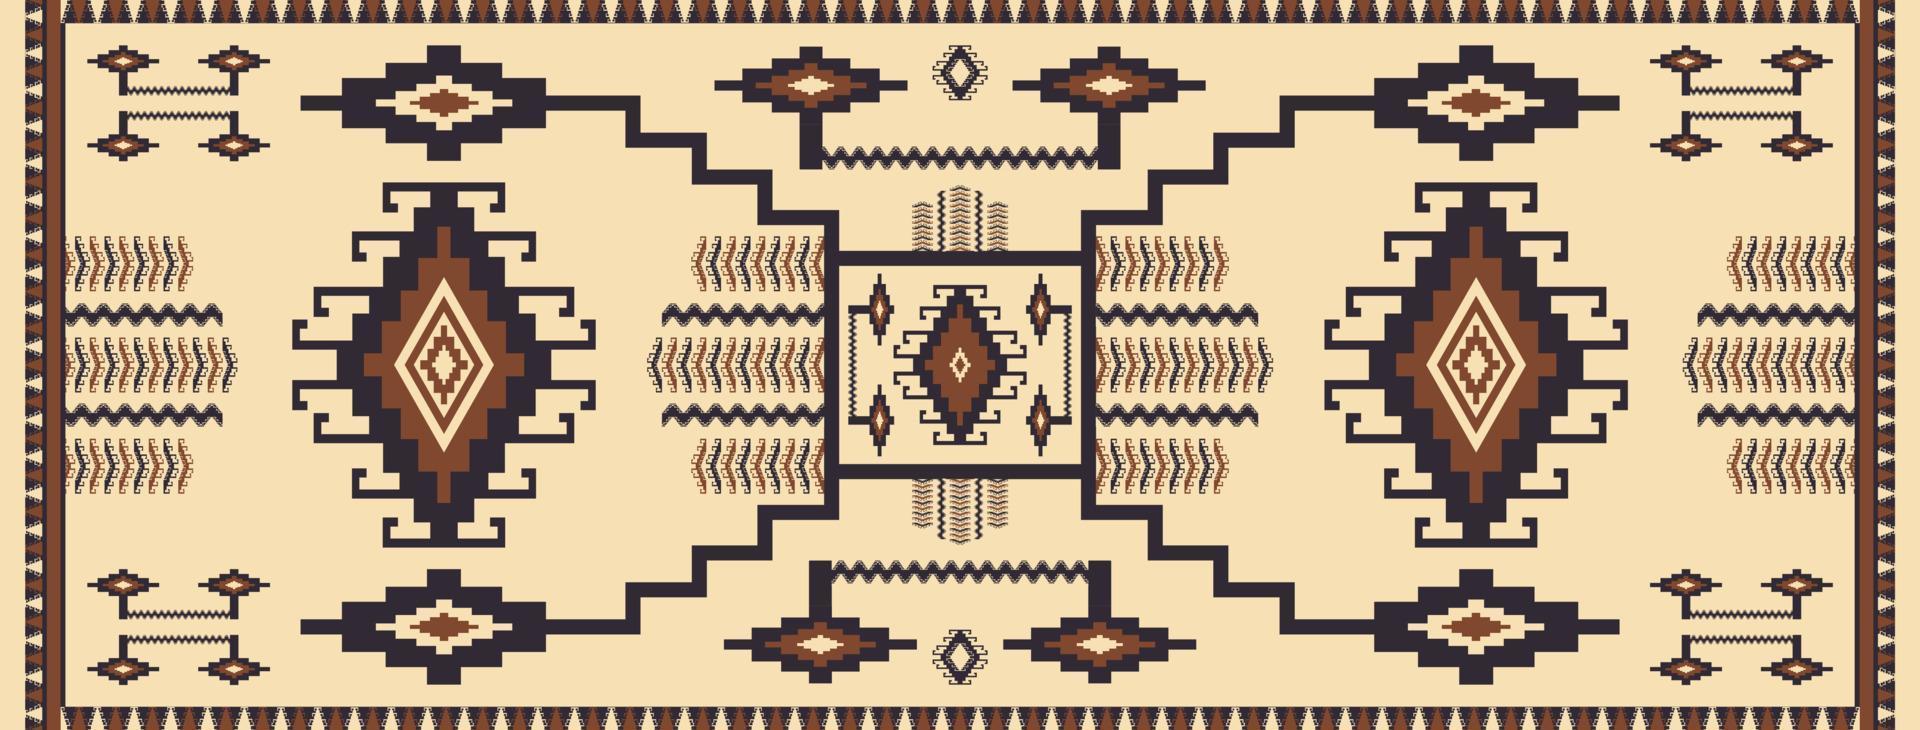 coureur ethnique motif géométrique couleur vintage. tapis ethnique du sud-ouest. tapis géométrique kilim aztèque natif. utilisation de motifs géométriques ethniques pour la décoration de sols de maison, éléments décoratifs de coureurs. vecteur